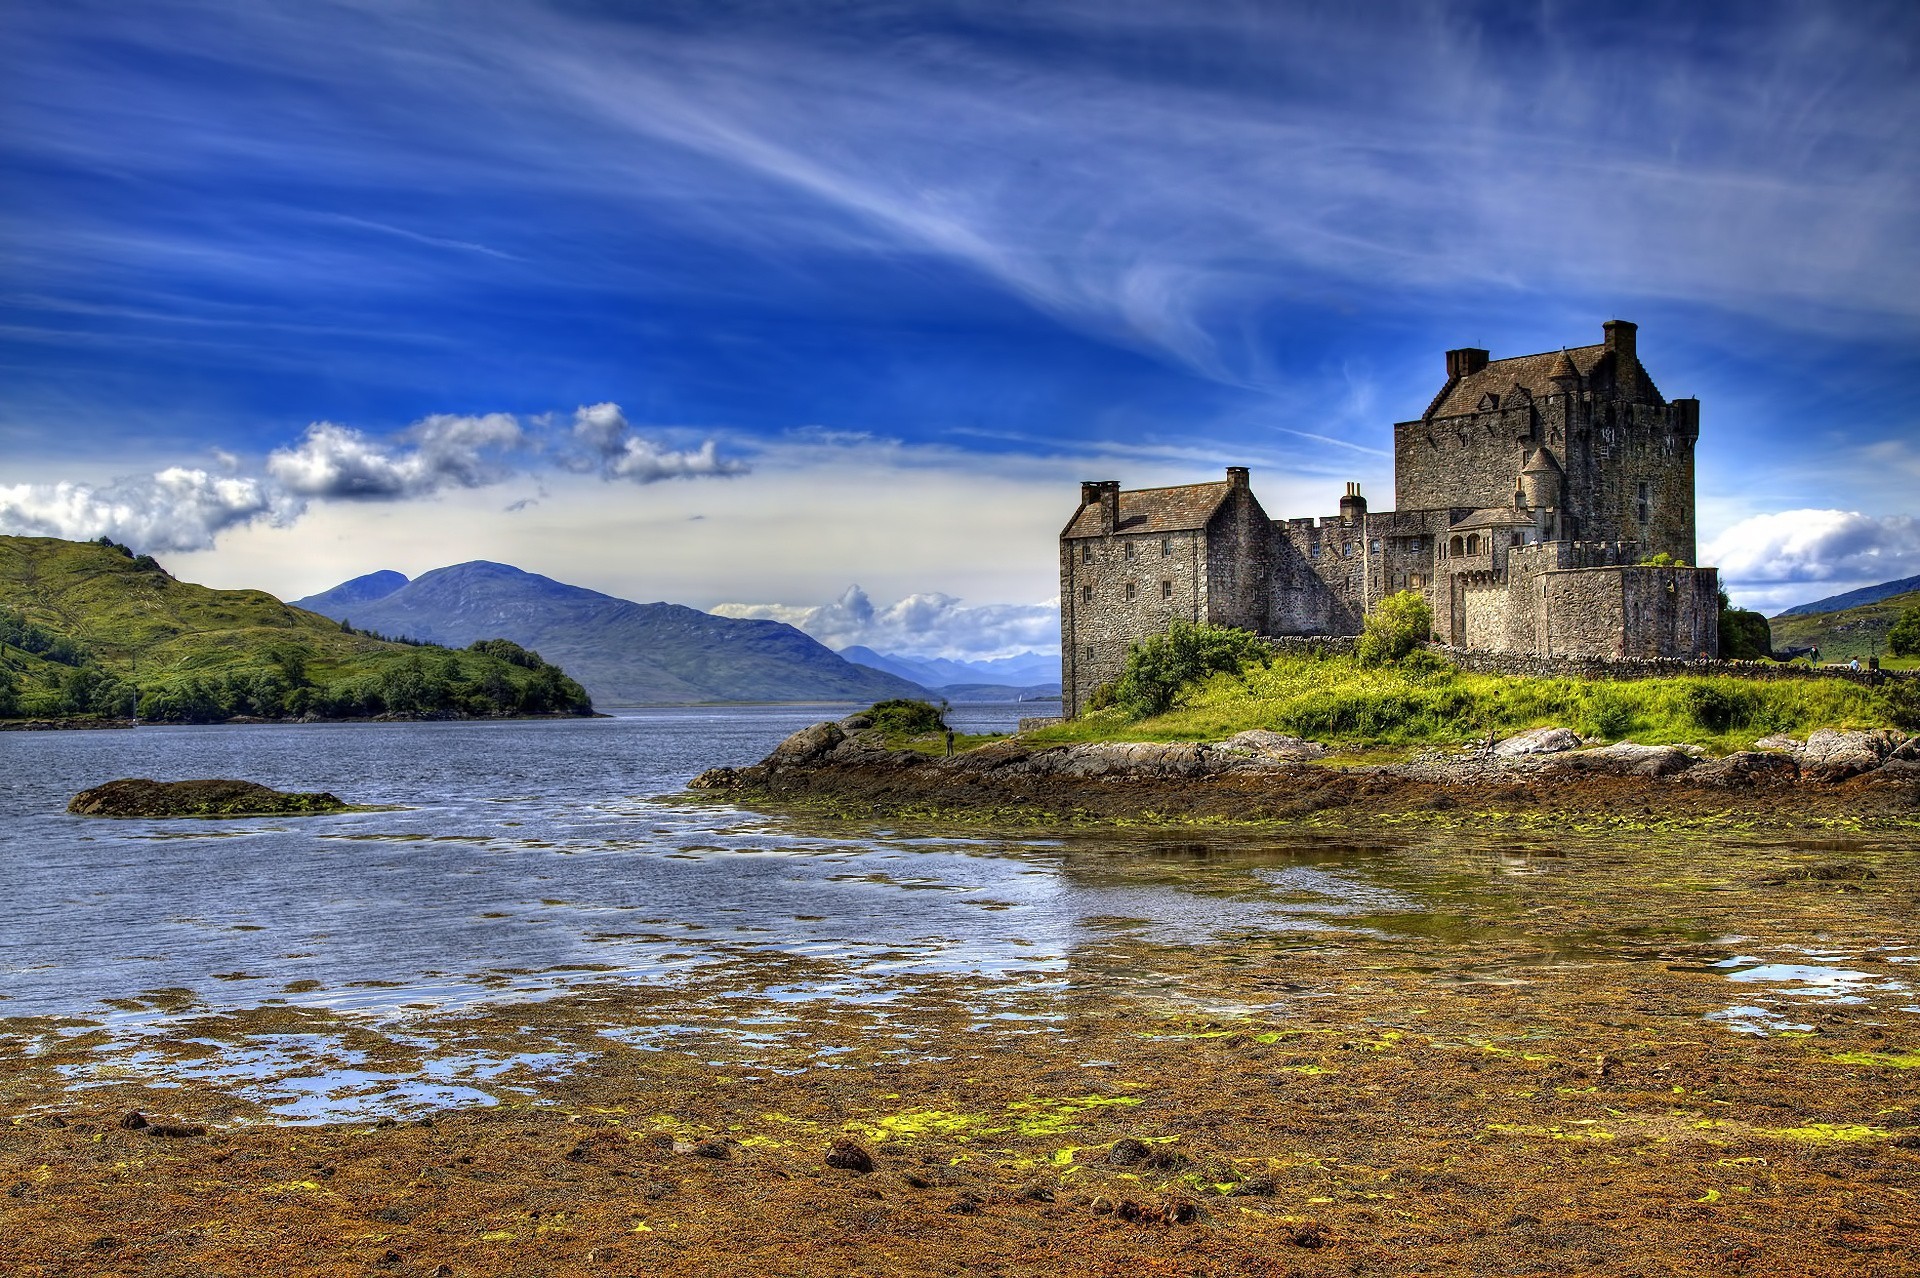 Scotland is beautiful. Замок Эйлен-Донан. Эйлен Донан Шотландия. Шотландский замок Эйлен Донан. Эйлин-Донан (замок, Шотландия).